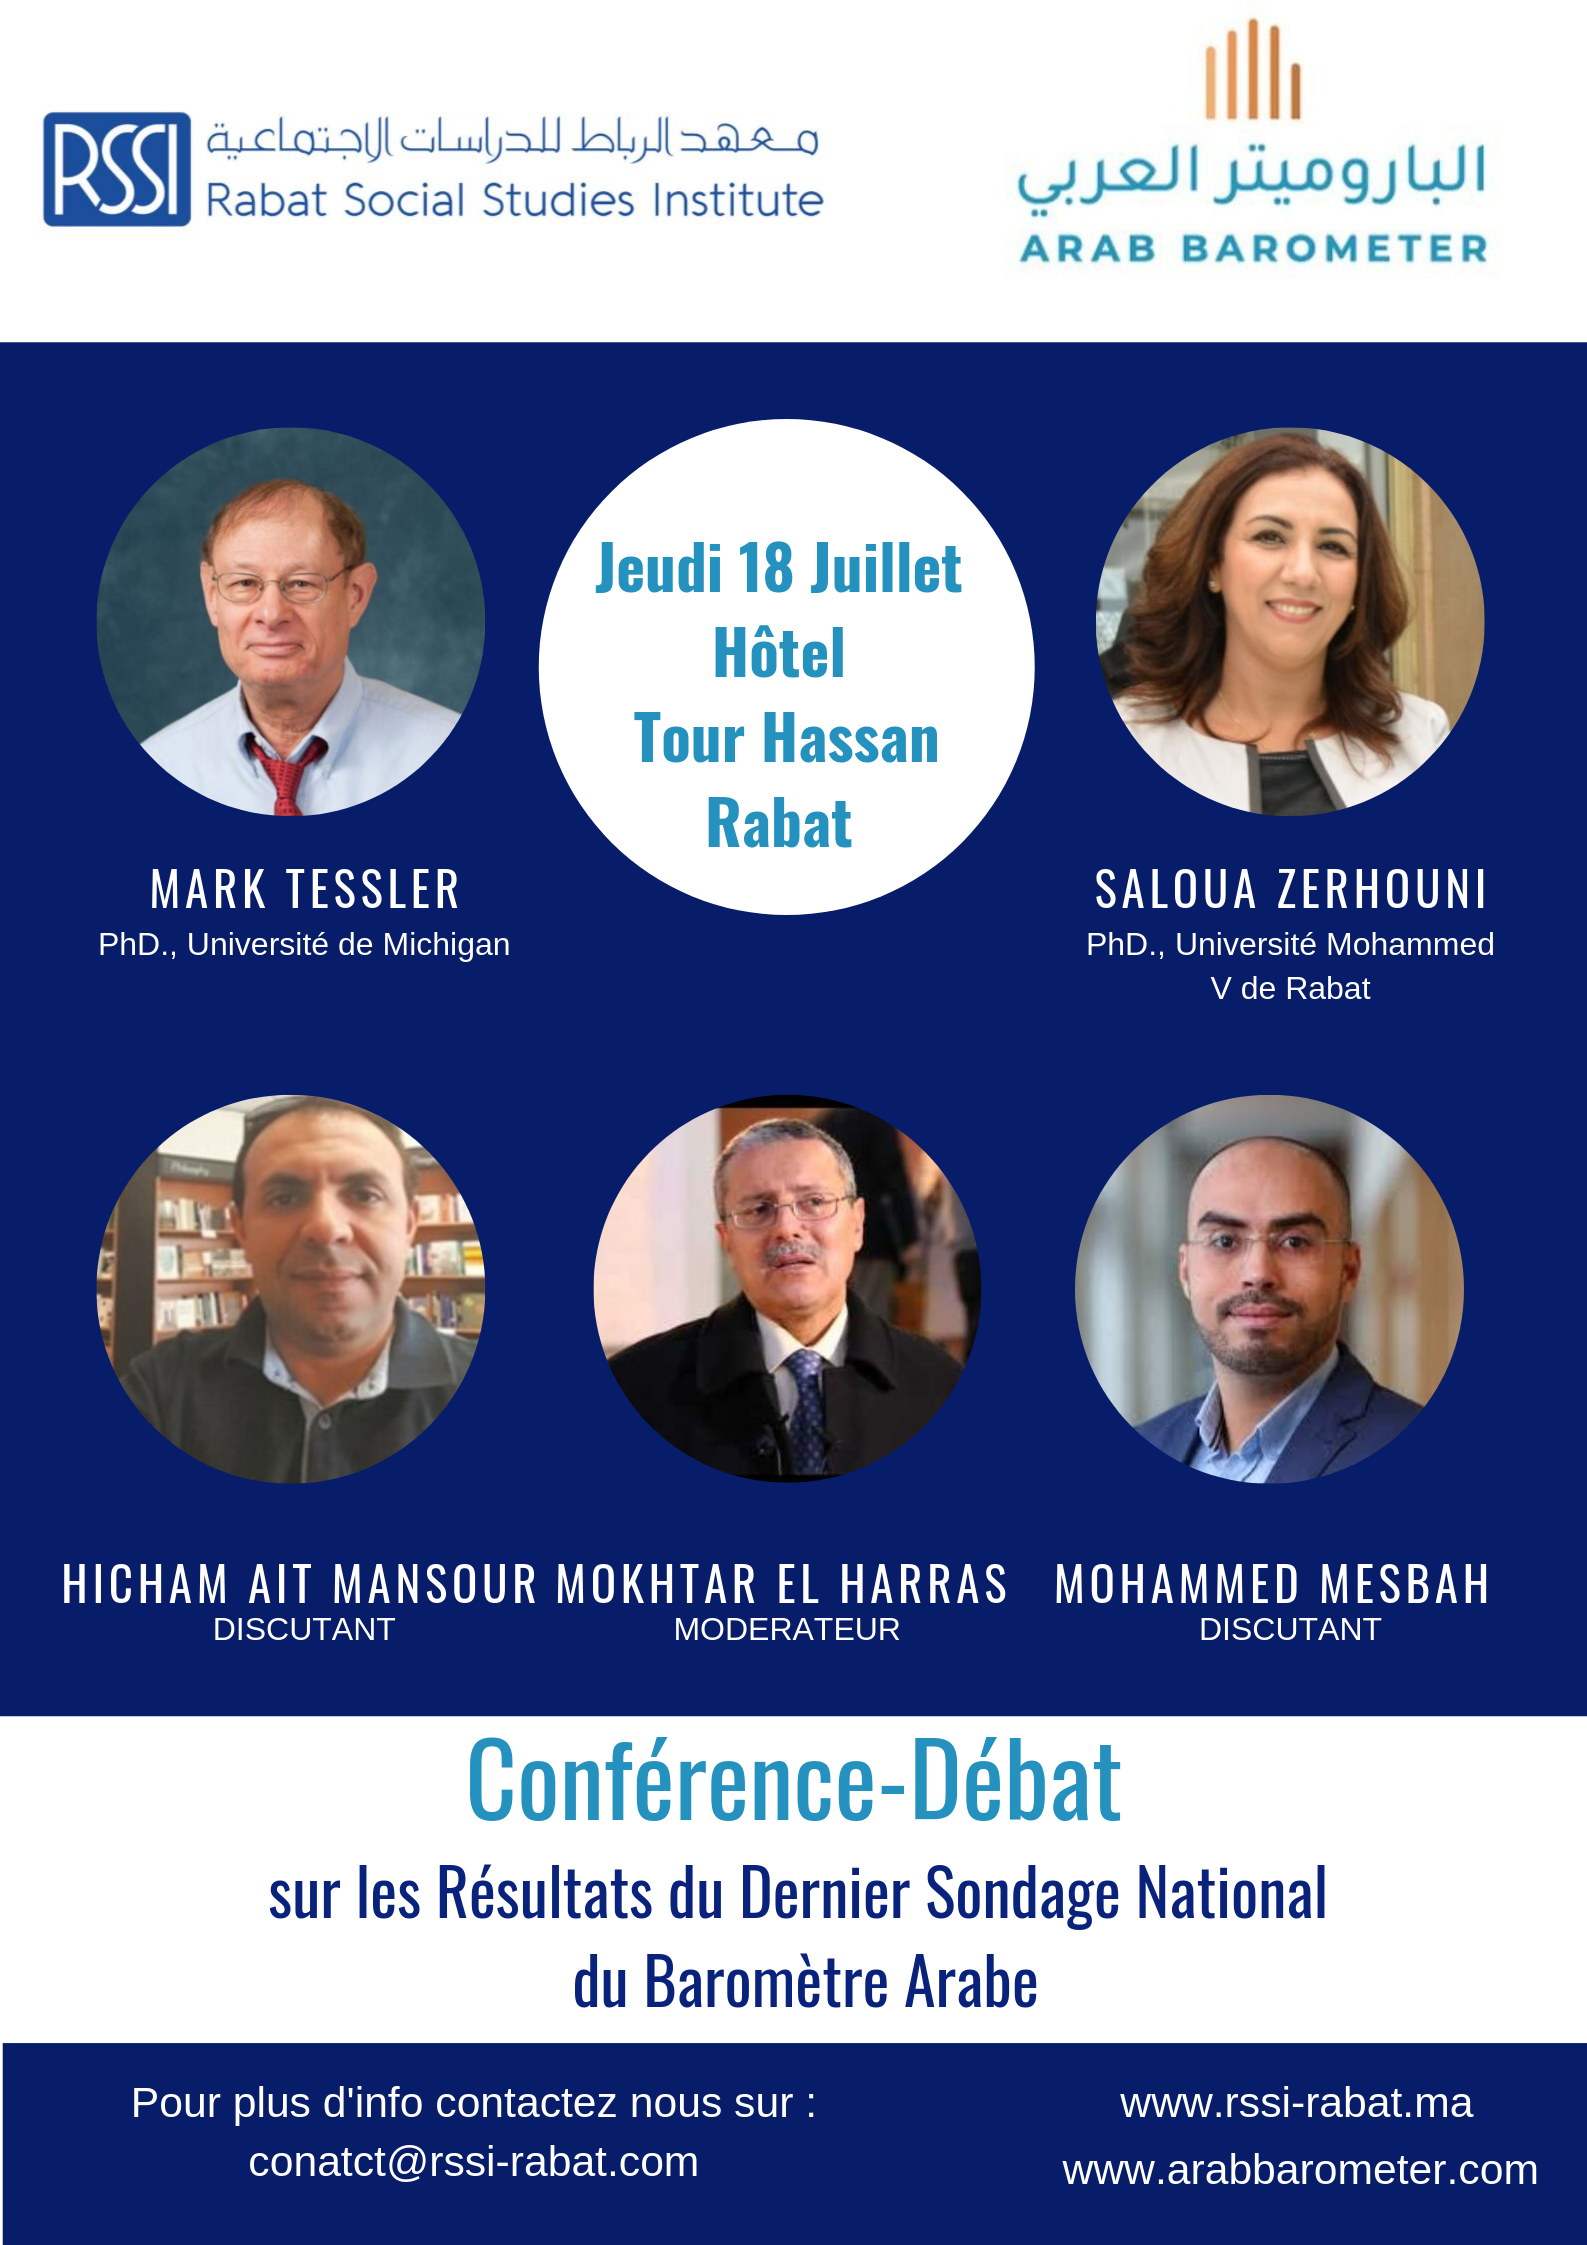 Conférence-débat sur les résultats du dernier sondage du Baromètre Arabe au Maroc